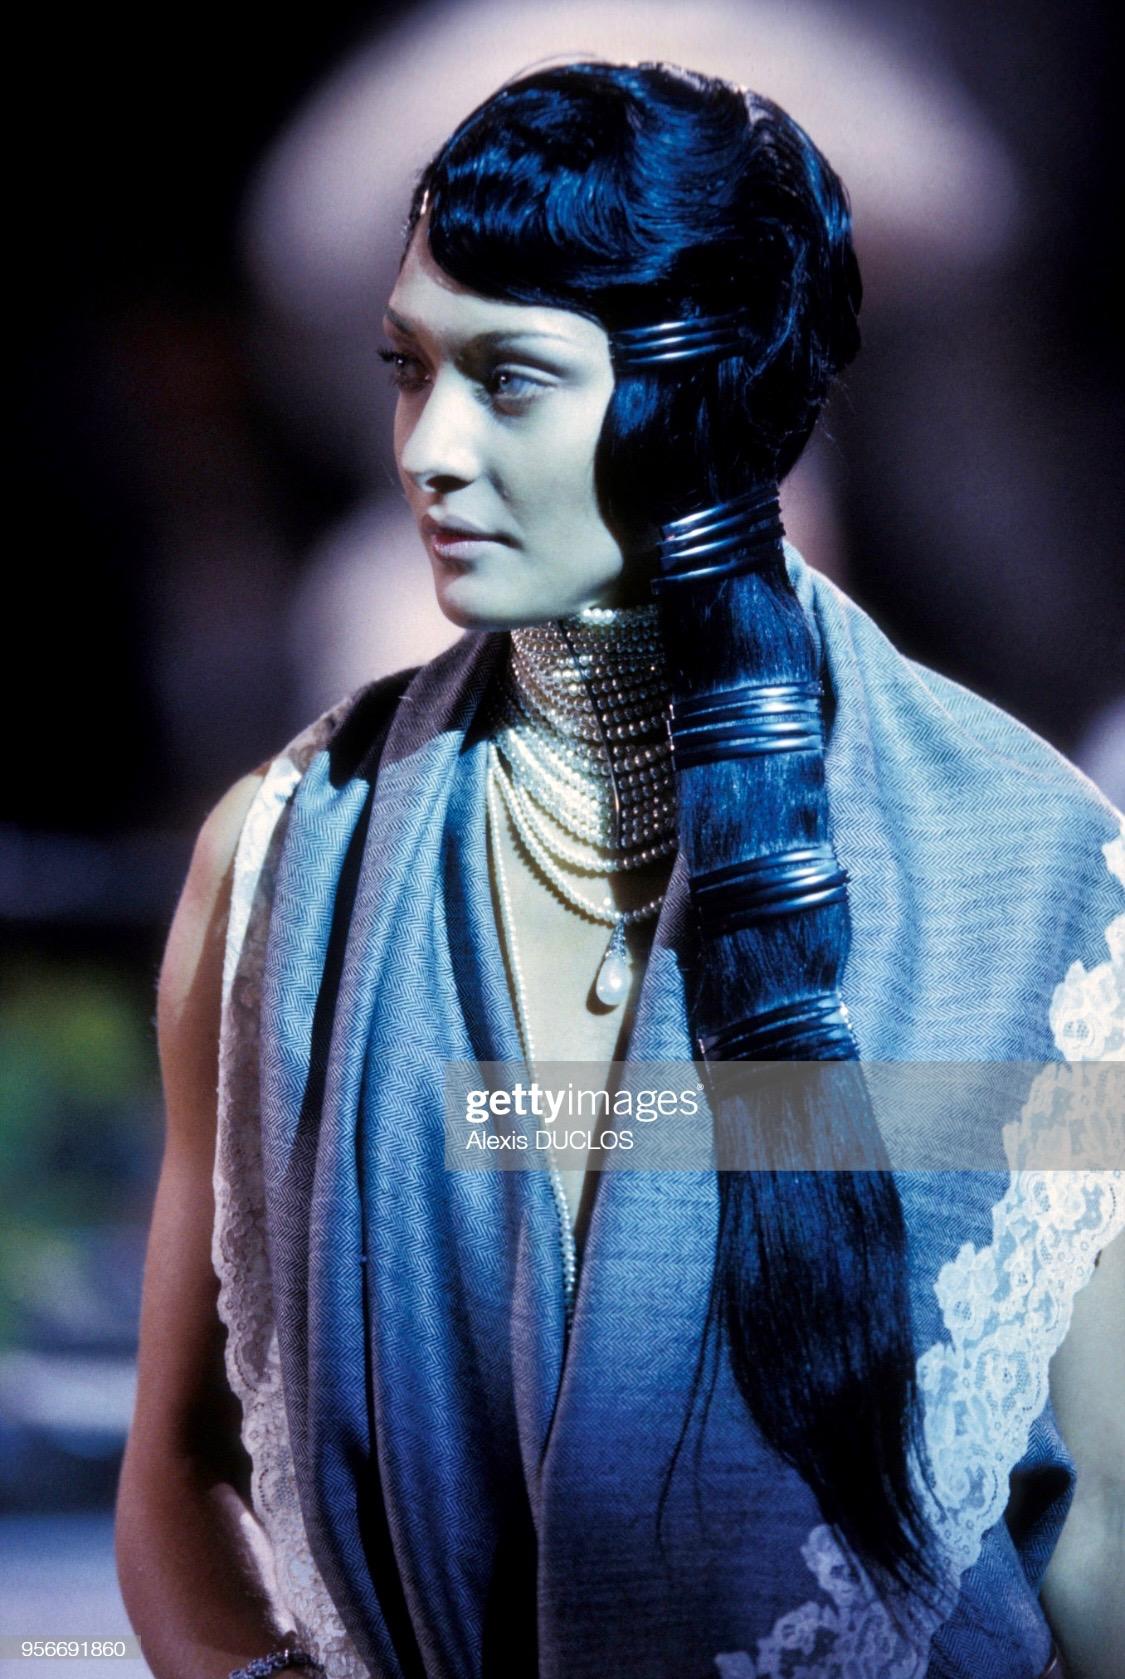 Collectional présente un tailleur jupe bordé de dentelle conçu par John Galliano pour la collection automne/hiver 1998 de Christian Dior. Une version grise de ce motif de dentelle a été présentée à plusieurs reprises lors du défilé de